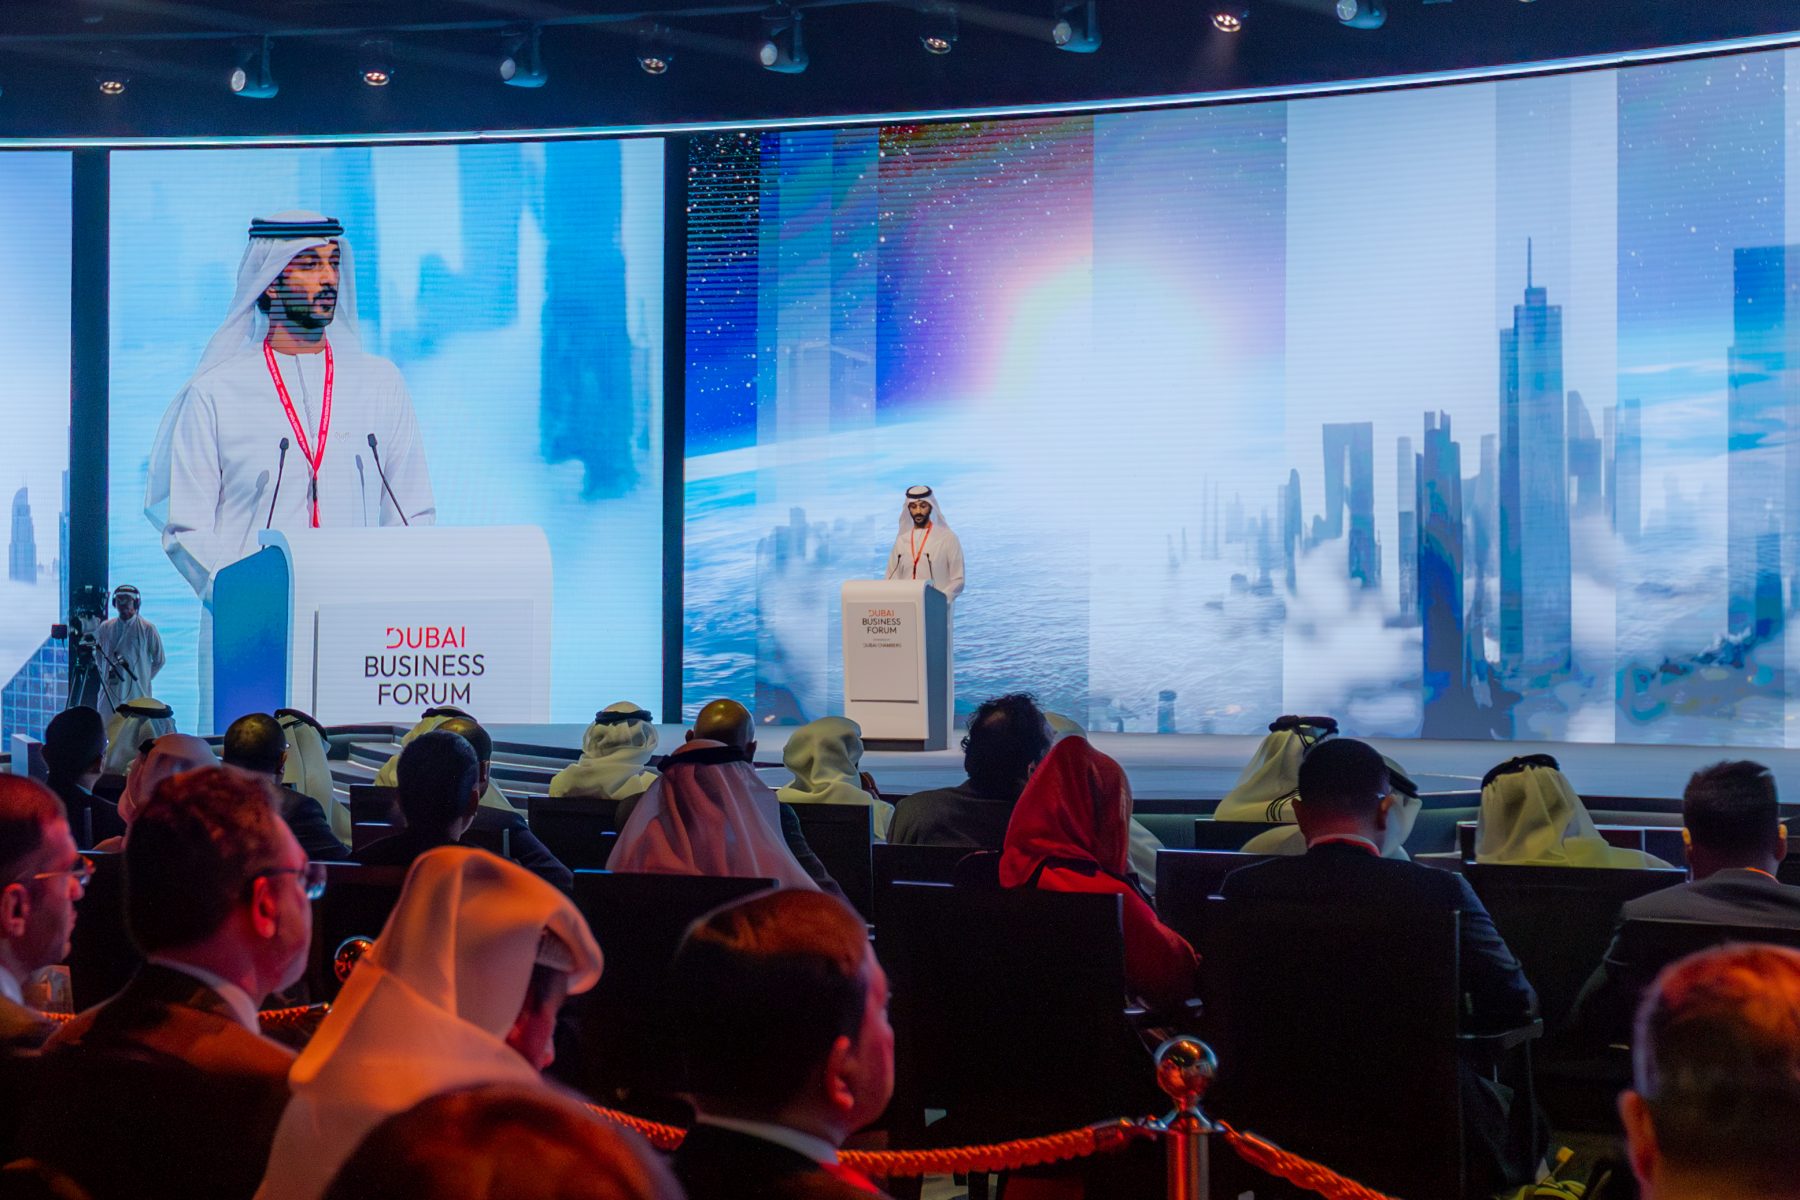 Dubai Business Forum speaker on stage